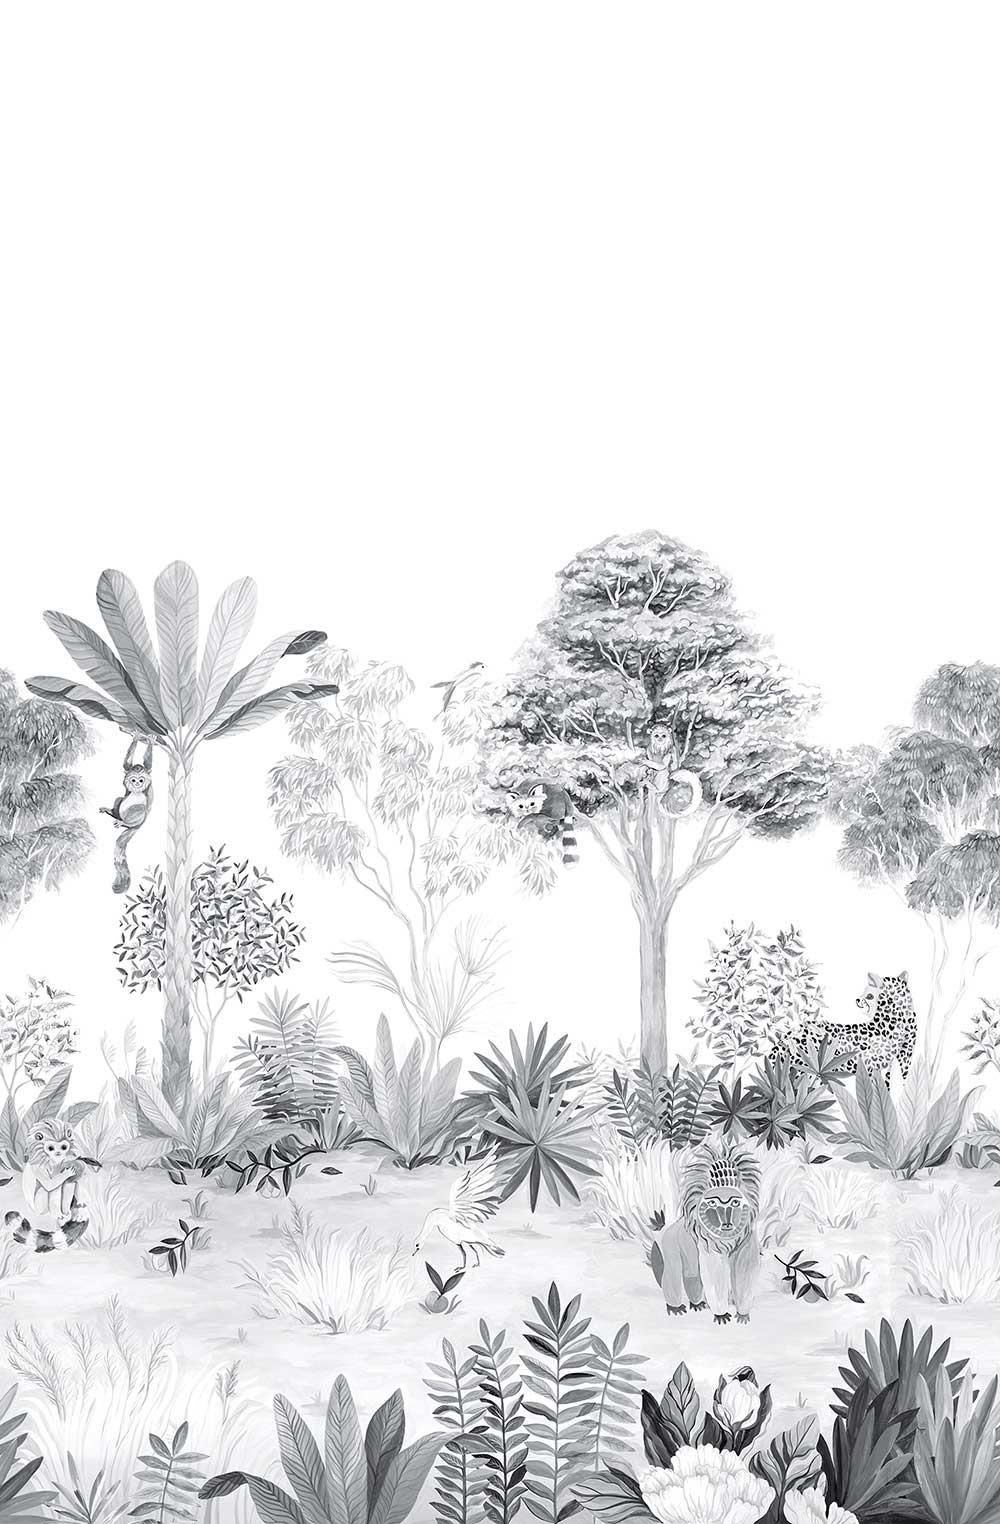 Classic Jungle Mural - Grey - by Sian Zeng